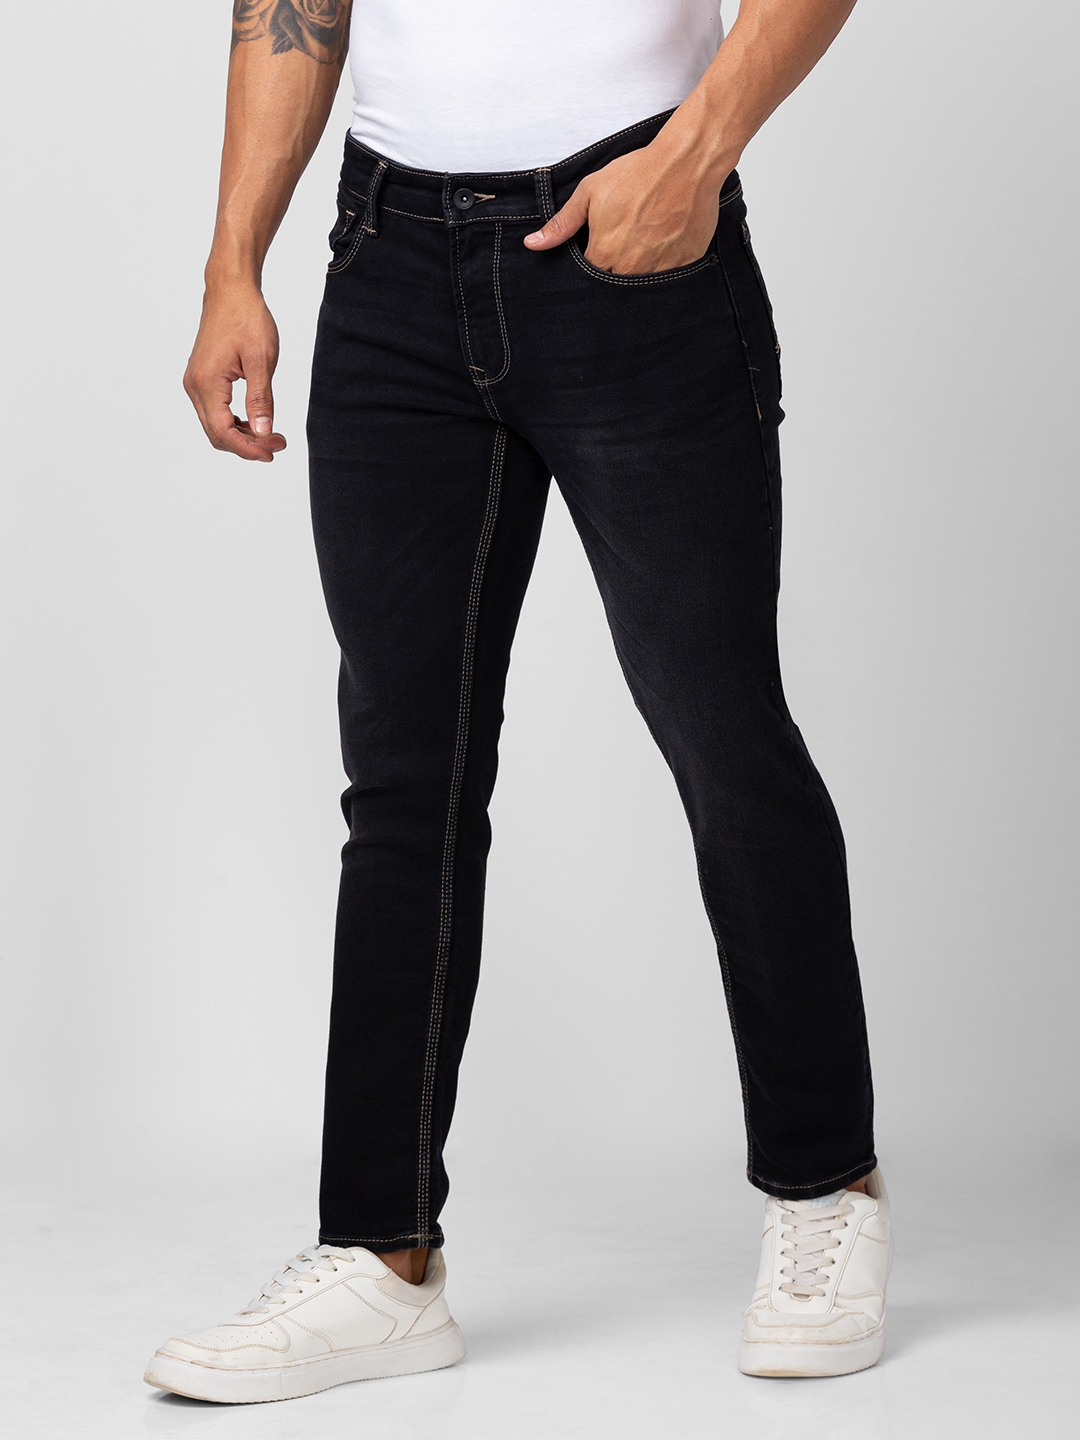 spykar | Men's Black Cotton Solid Jeans 3